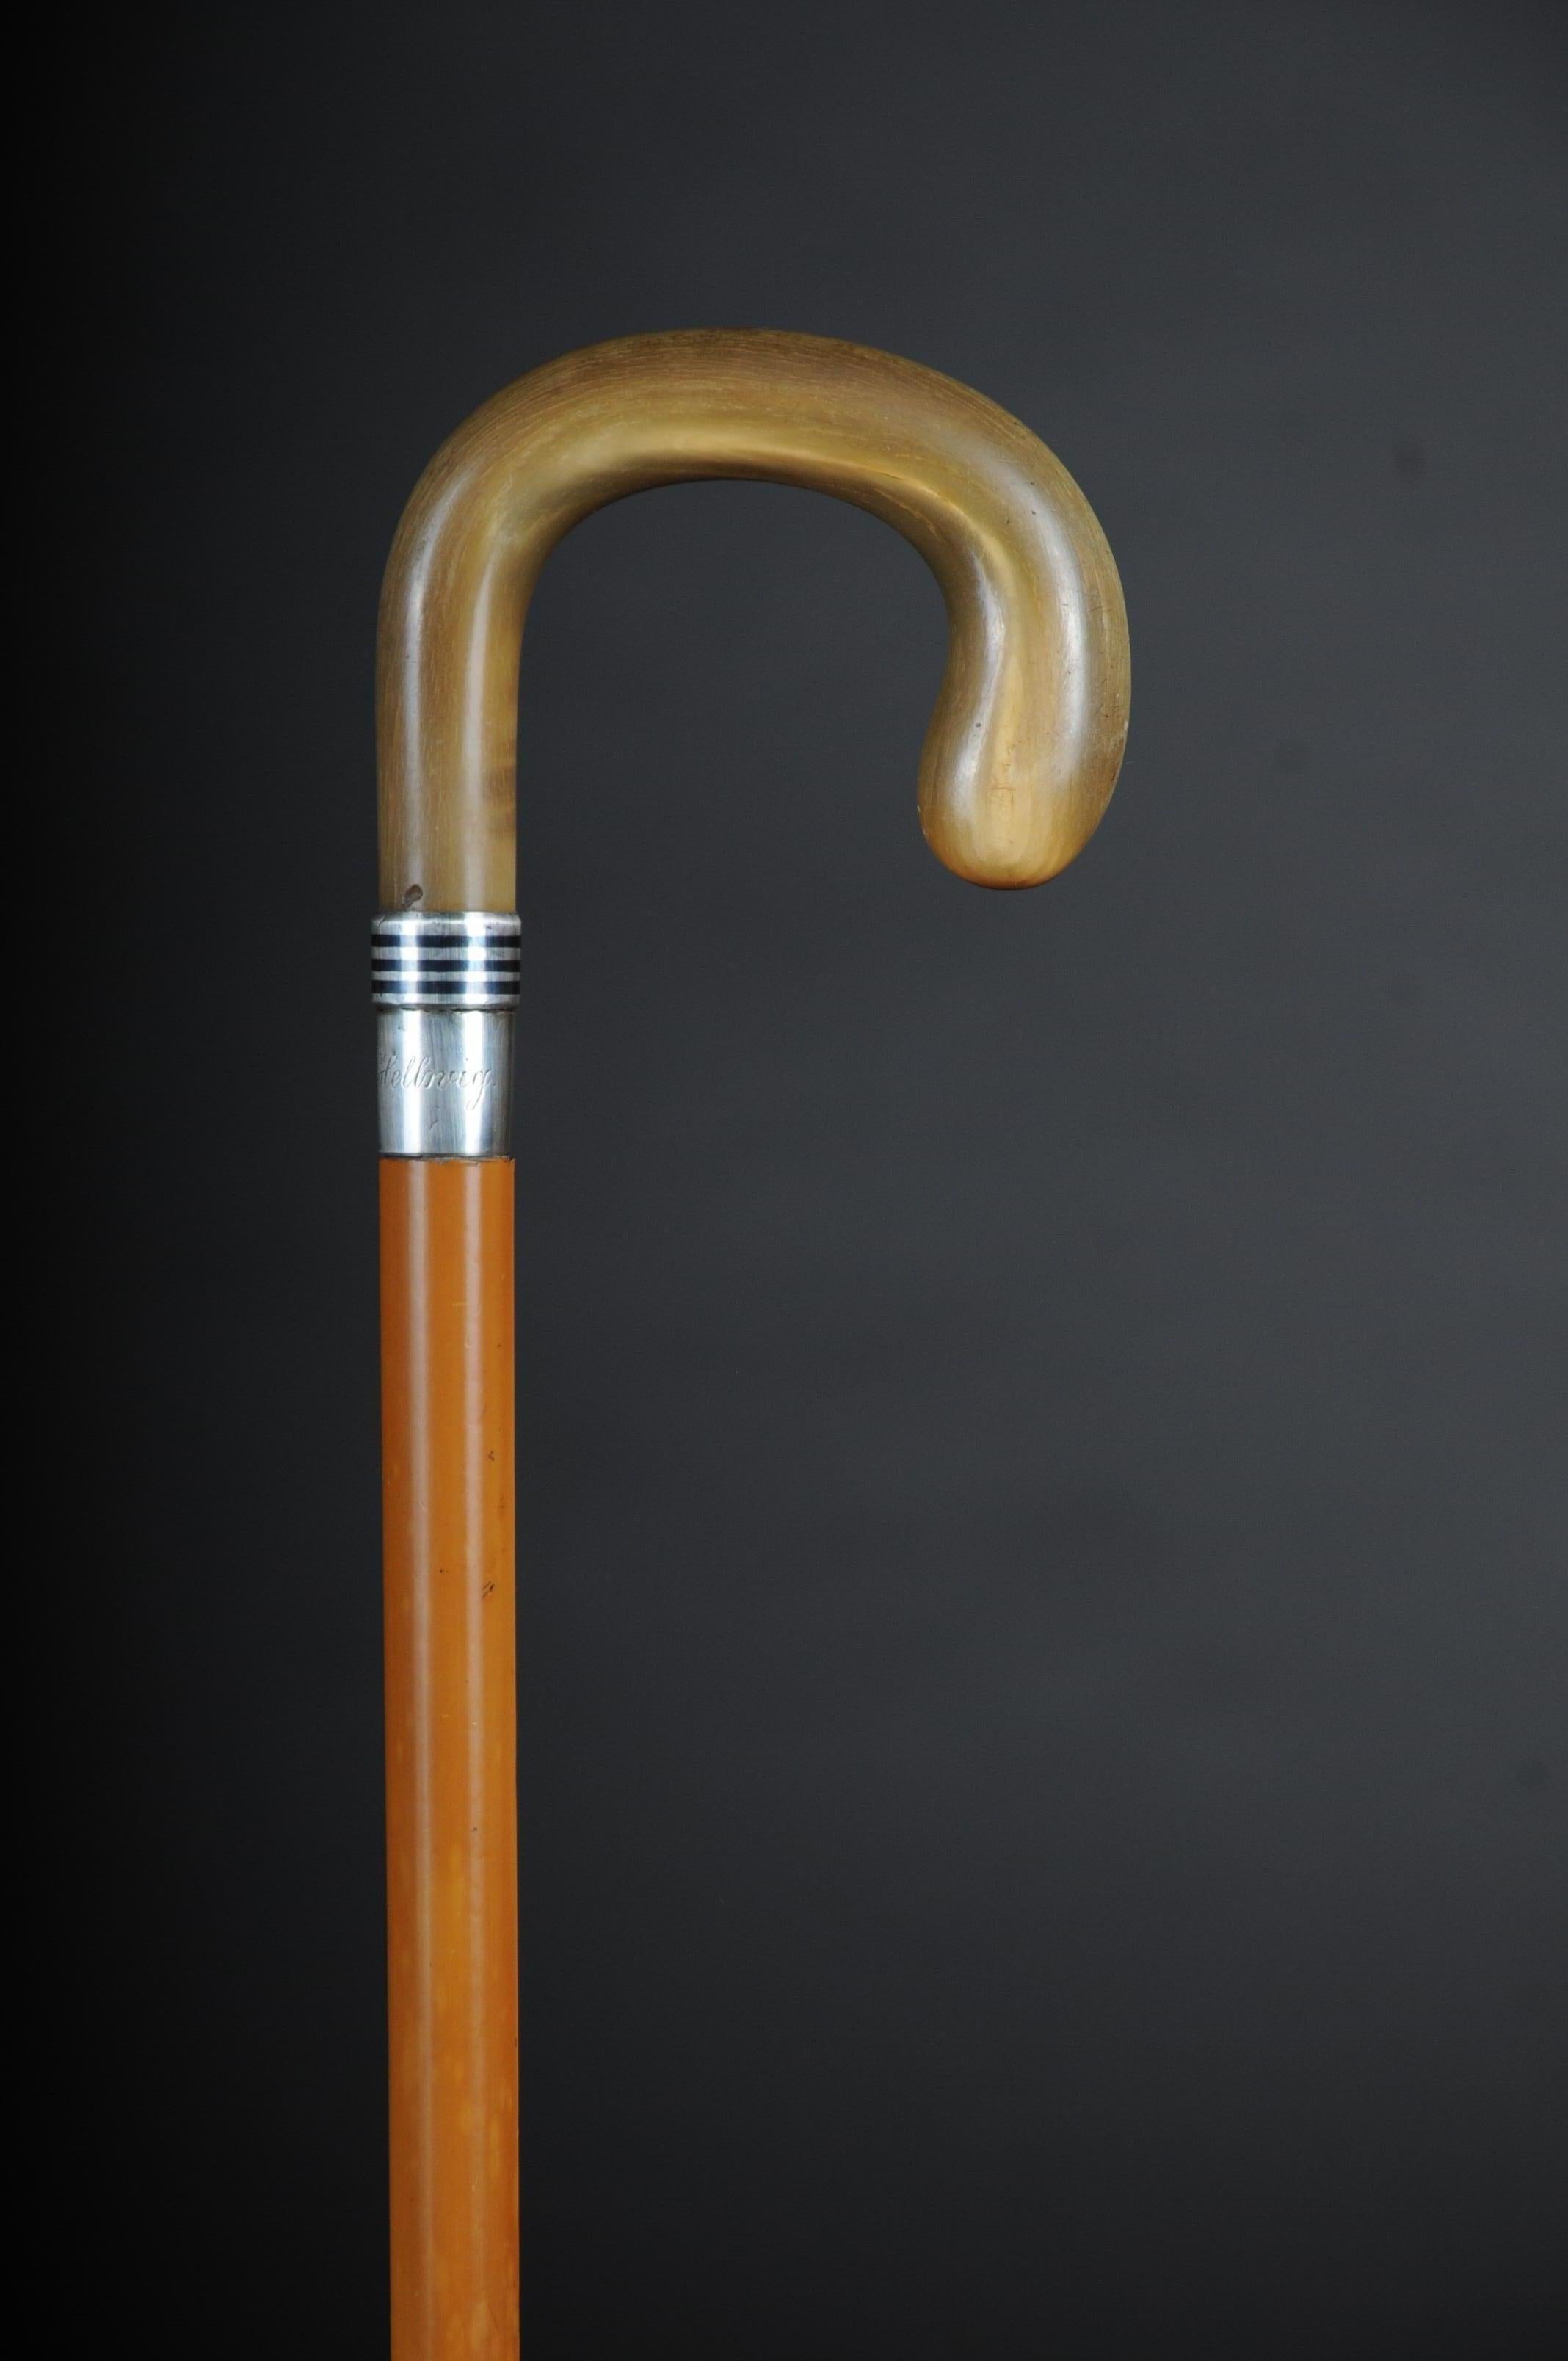 massiv horn handle 
silver shaft
robust stick 

(V-215).